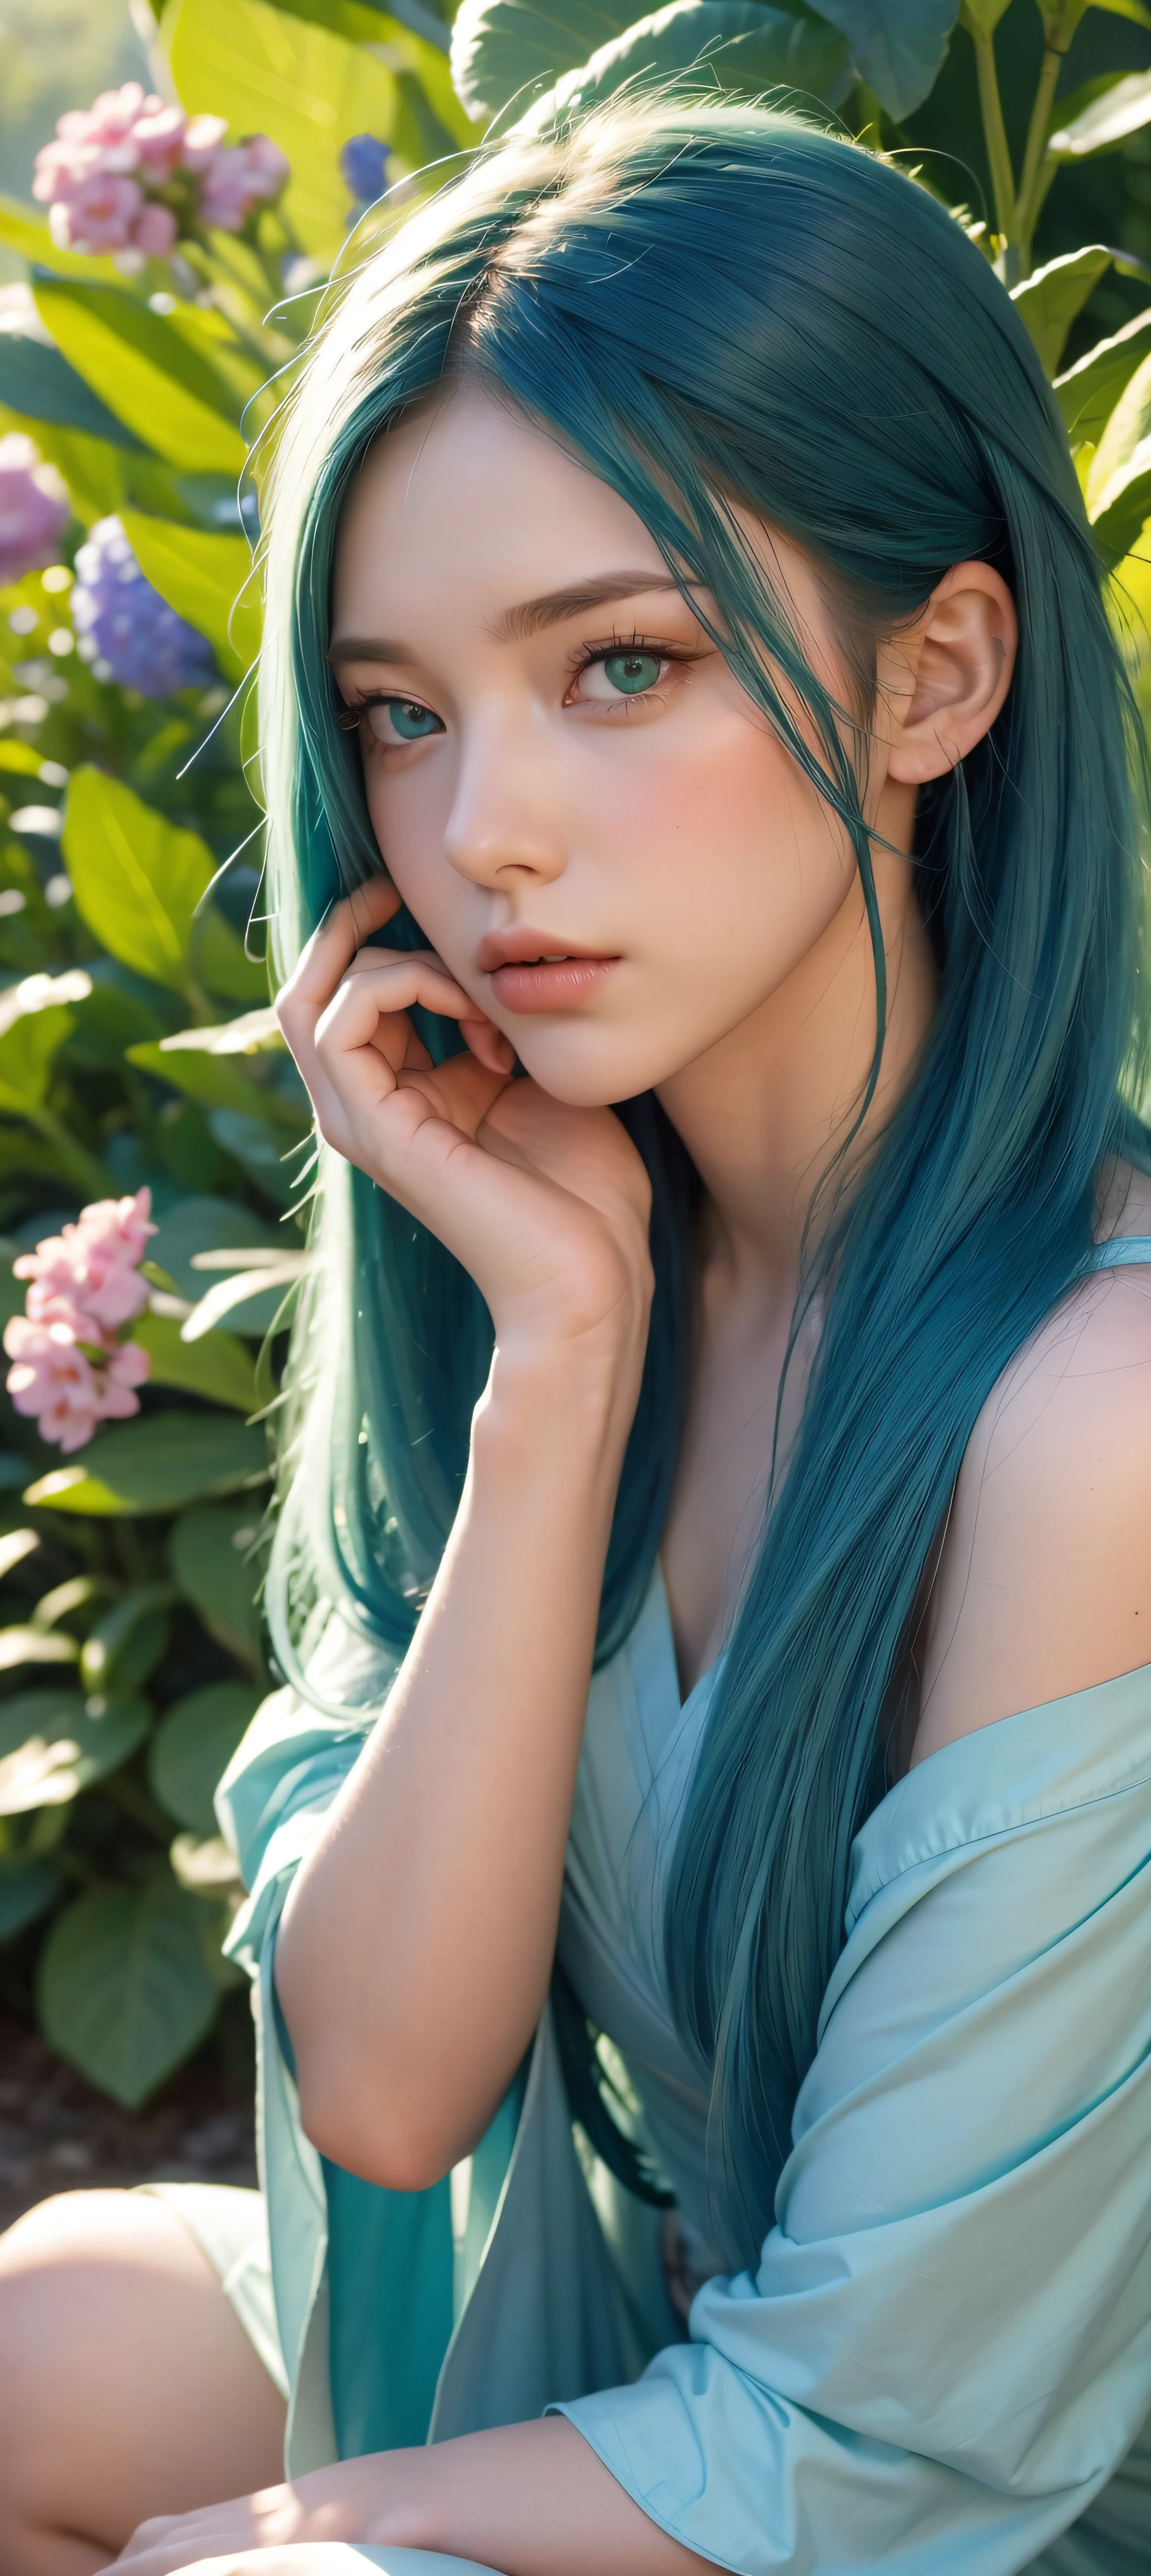 8千, 生的, (杰作, 最好的质量),1 长着蓝绿色长发的女孩坐在一片绿植和鲜花的田野中, 详细的绿眼睛, 她的手放在下巴下, 暖色灯光, 漂亮的红裙子, 美丽的前景